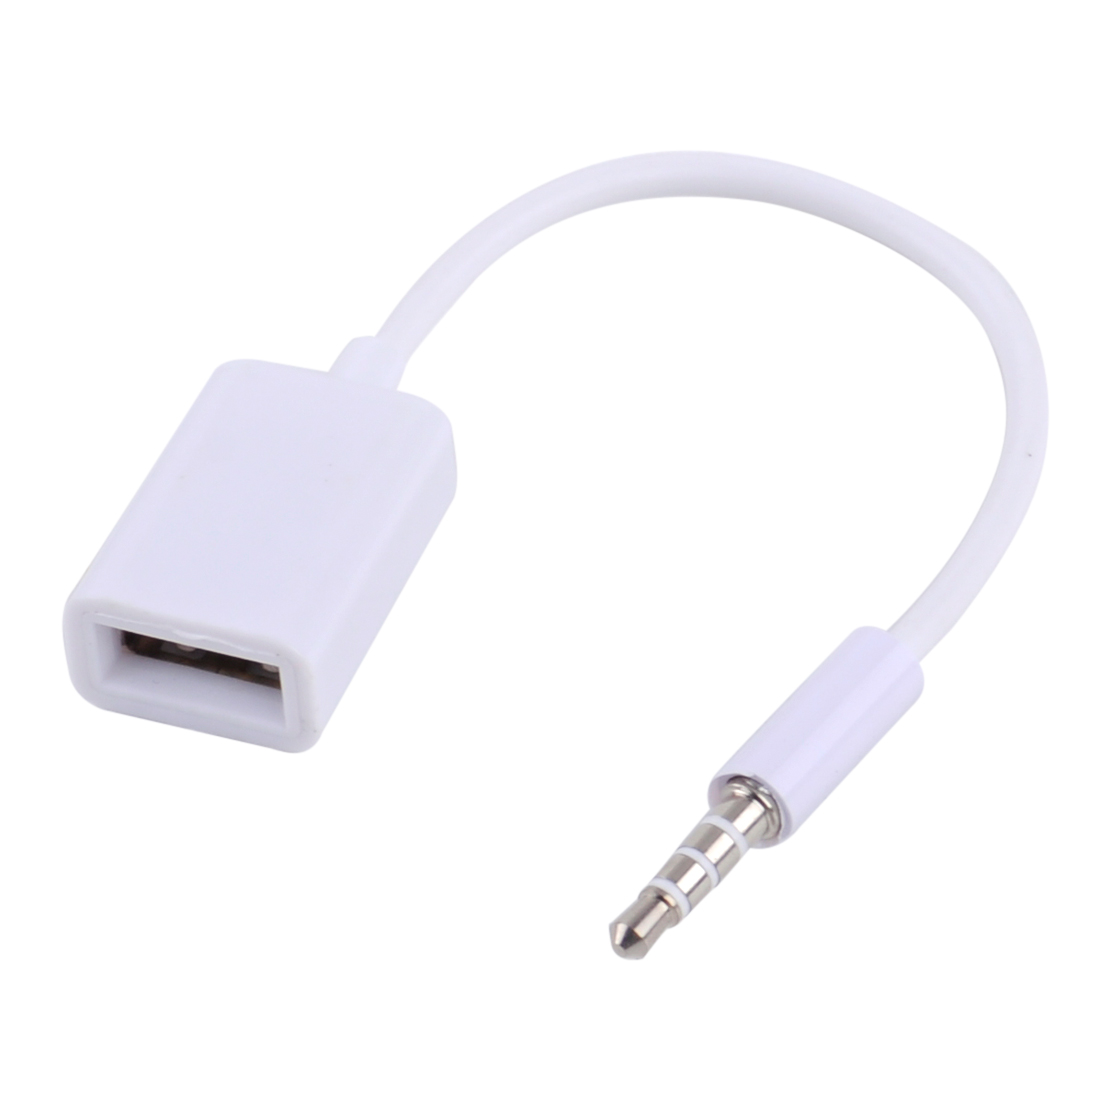 2x 3,5 mm Stecker AUX Audio Buchse auf USB 2.0 Buchse Kabel für Auto MP3 